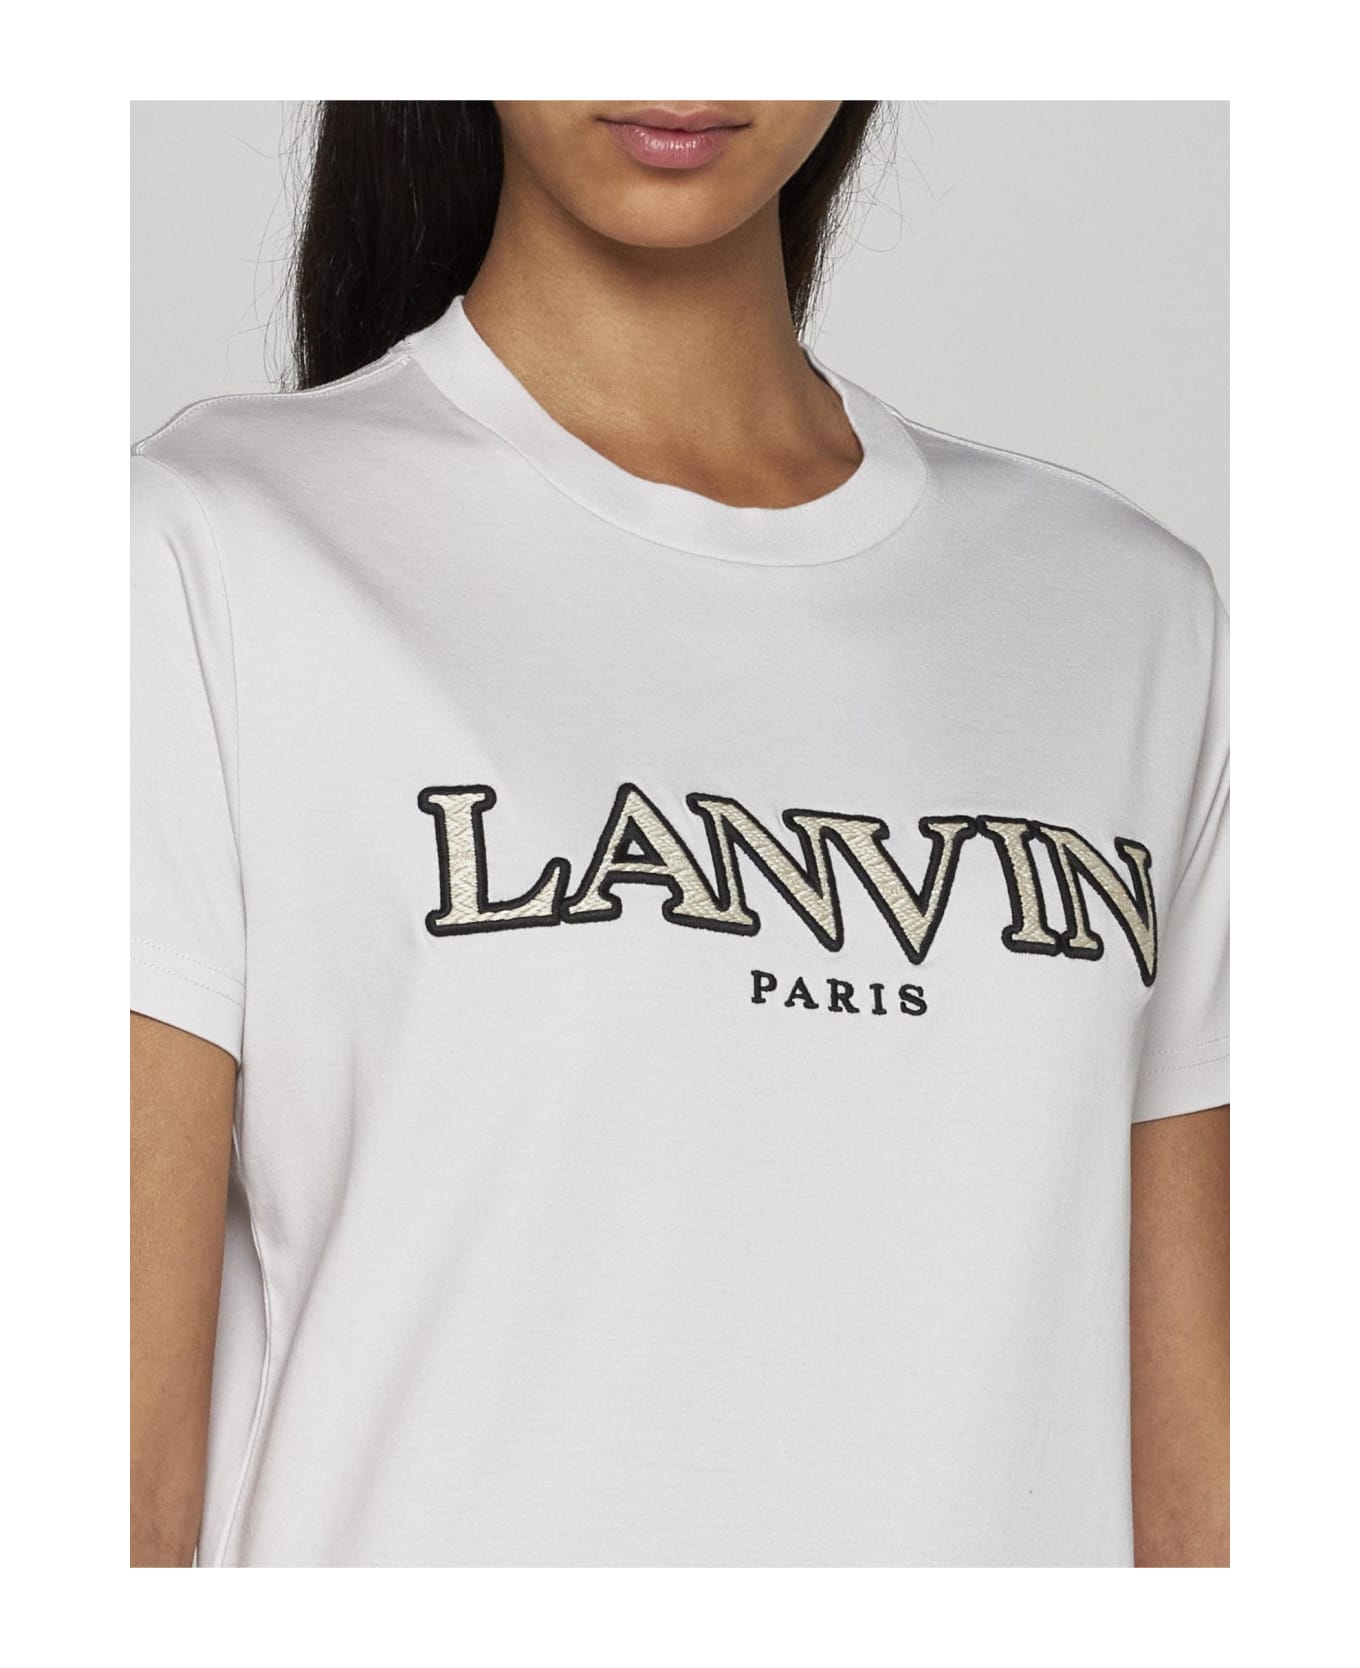 Lanvin Curb Logo Cotton T-shirt - Mastic Tシャツ